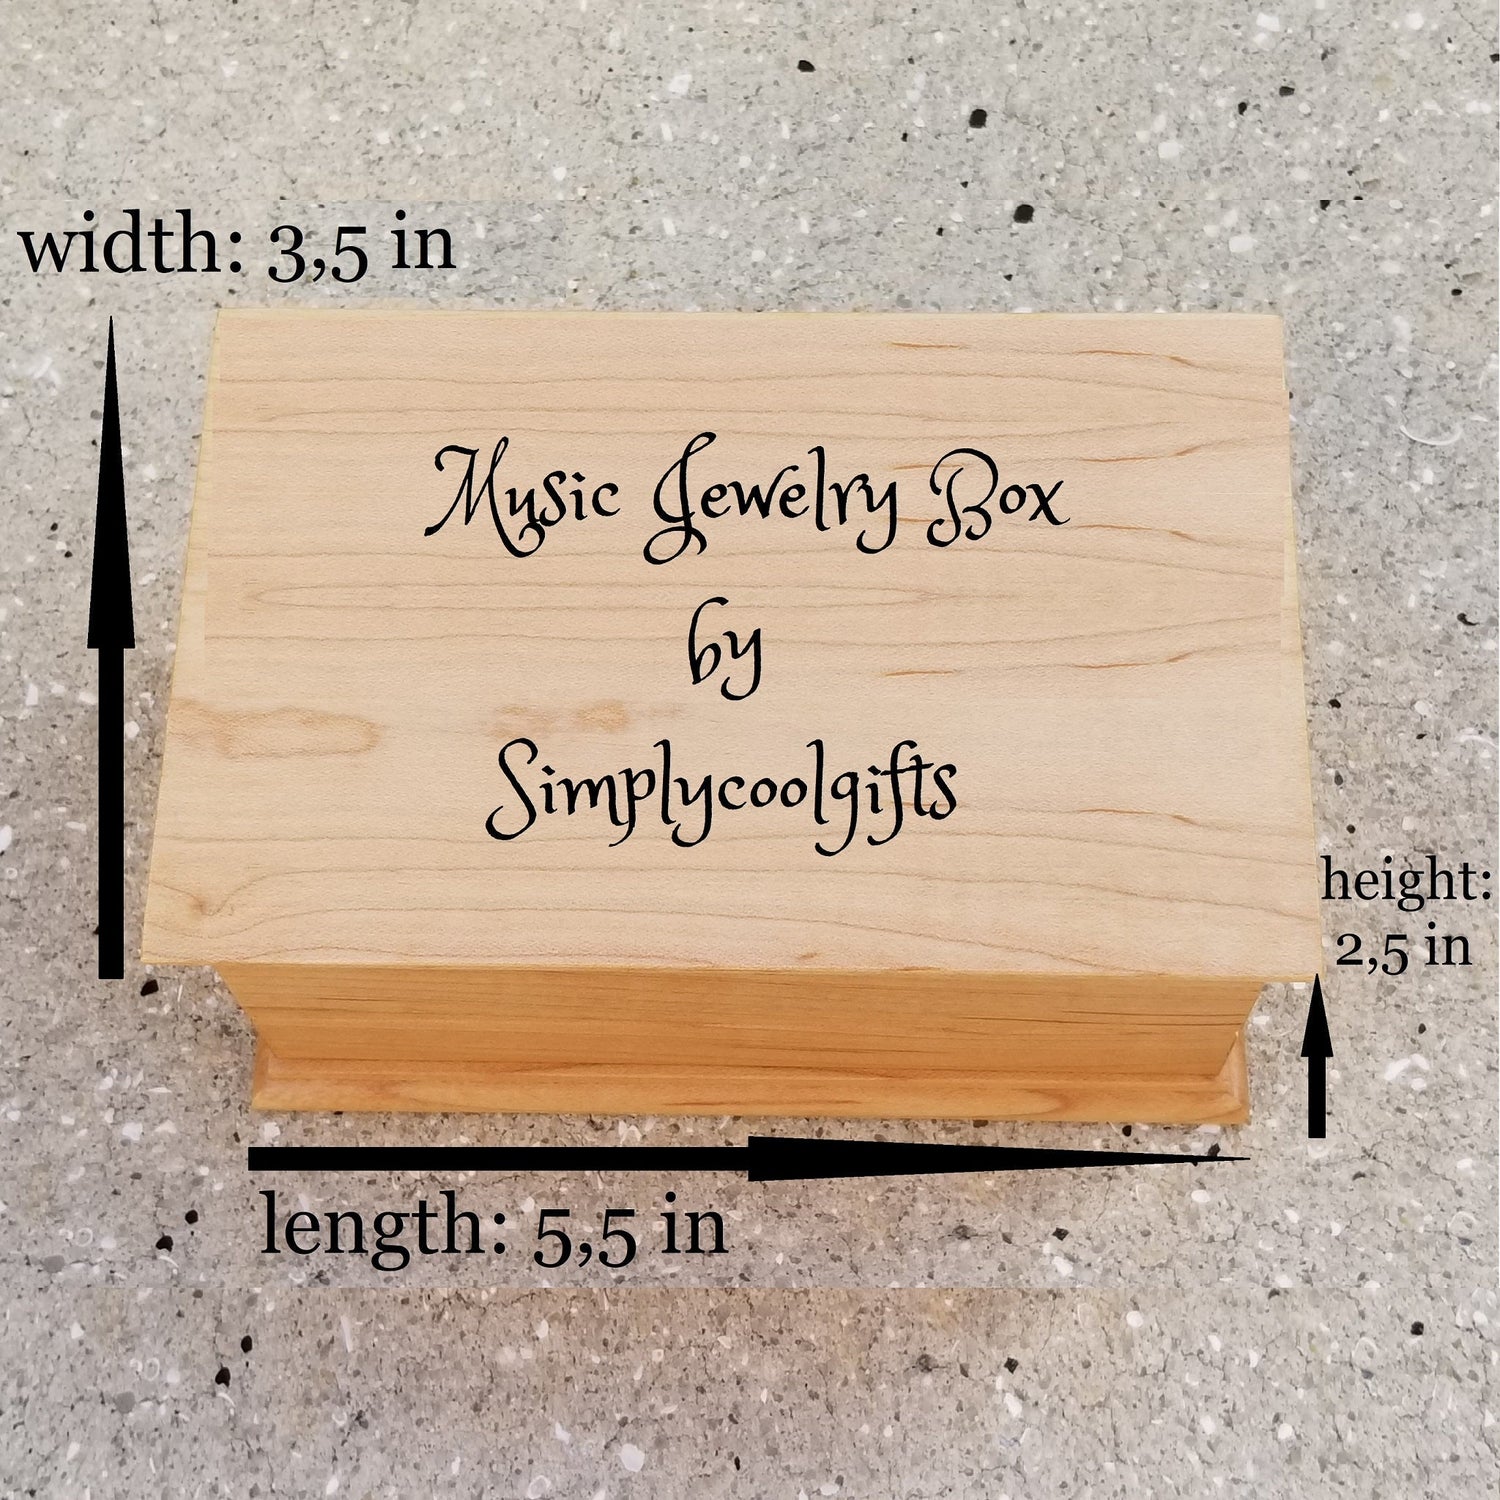 jewelry box size information